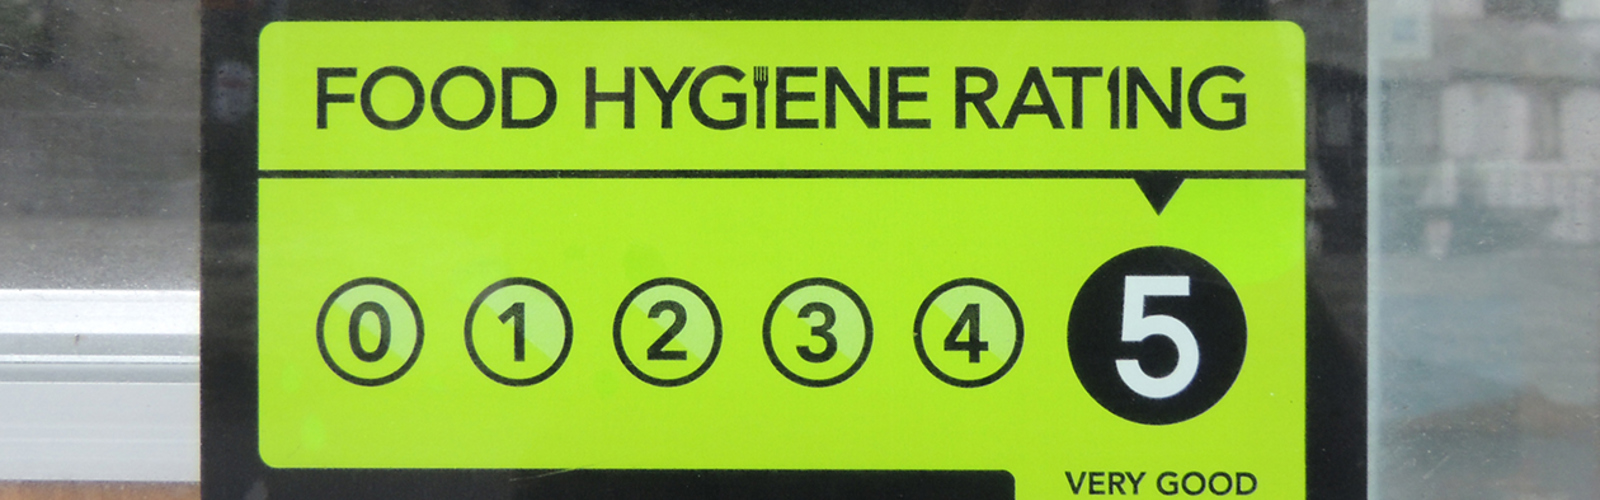 Food hygiene rating scheme sticker